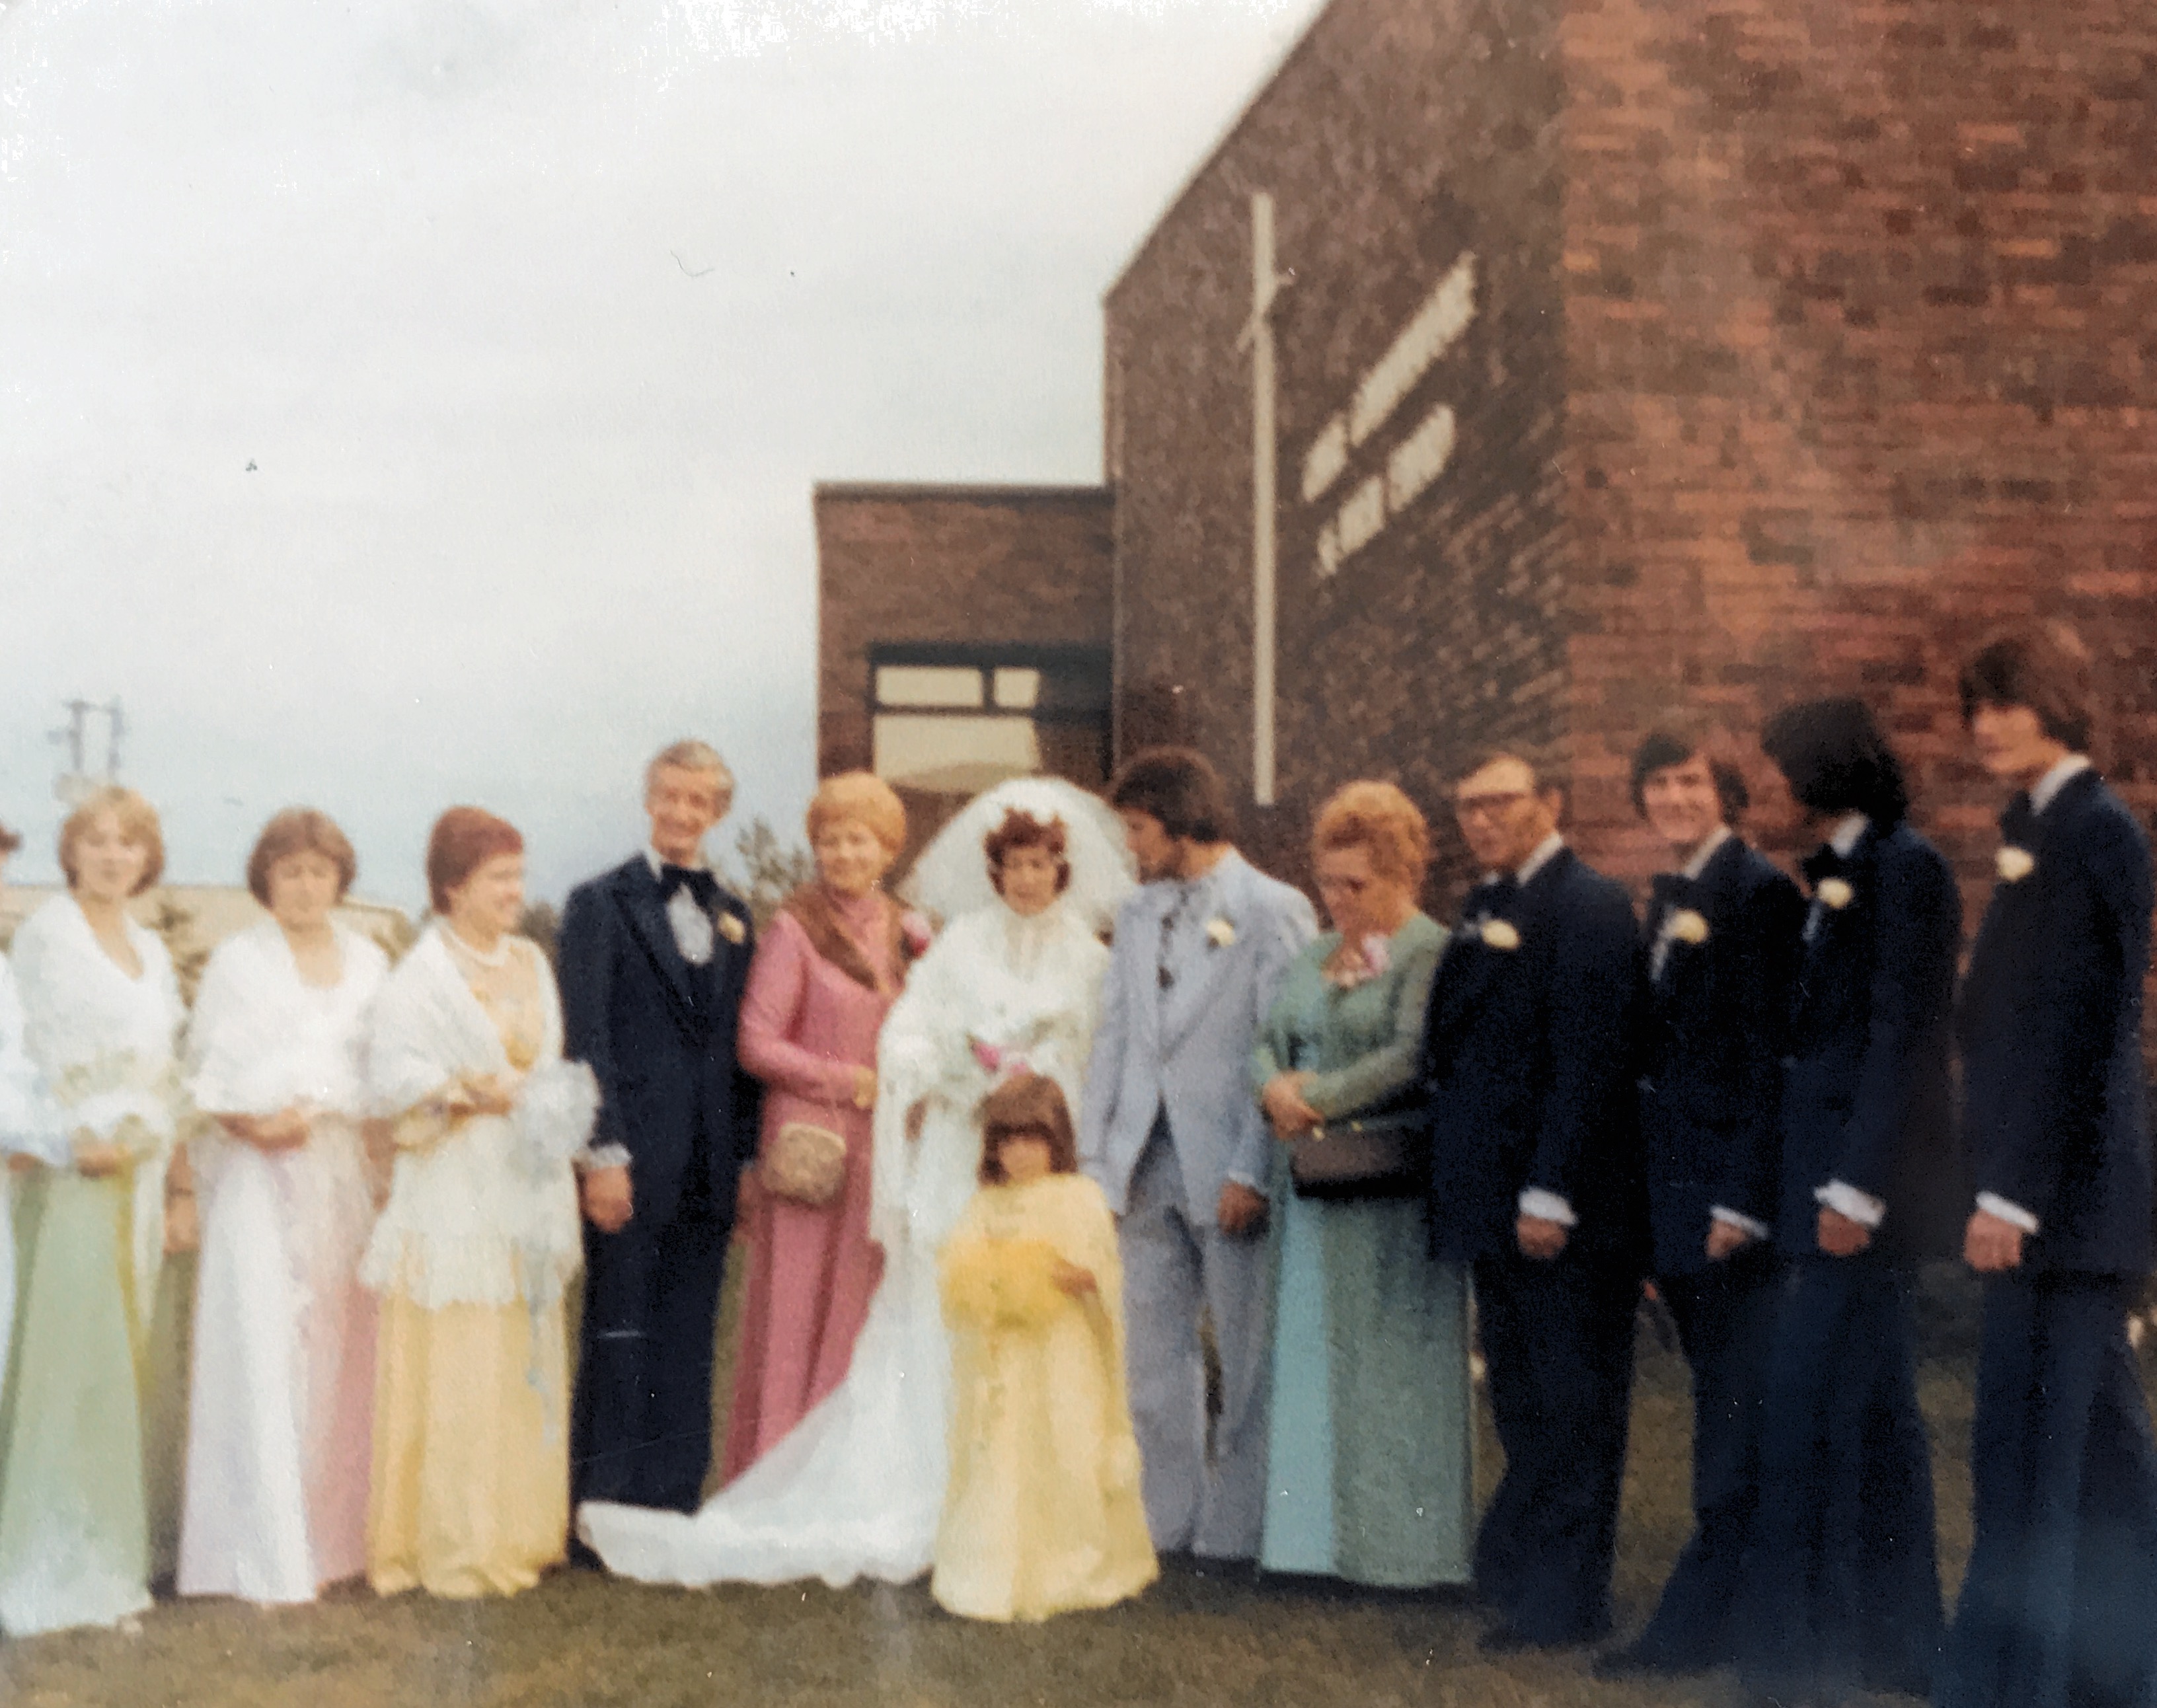 Le mariage de diane et Guy en 1976